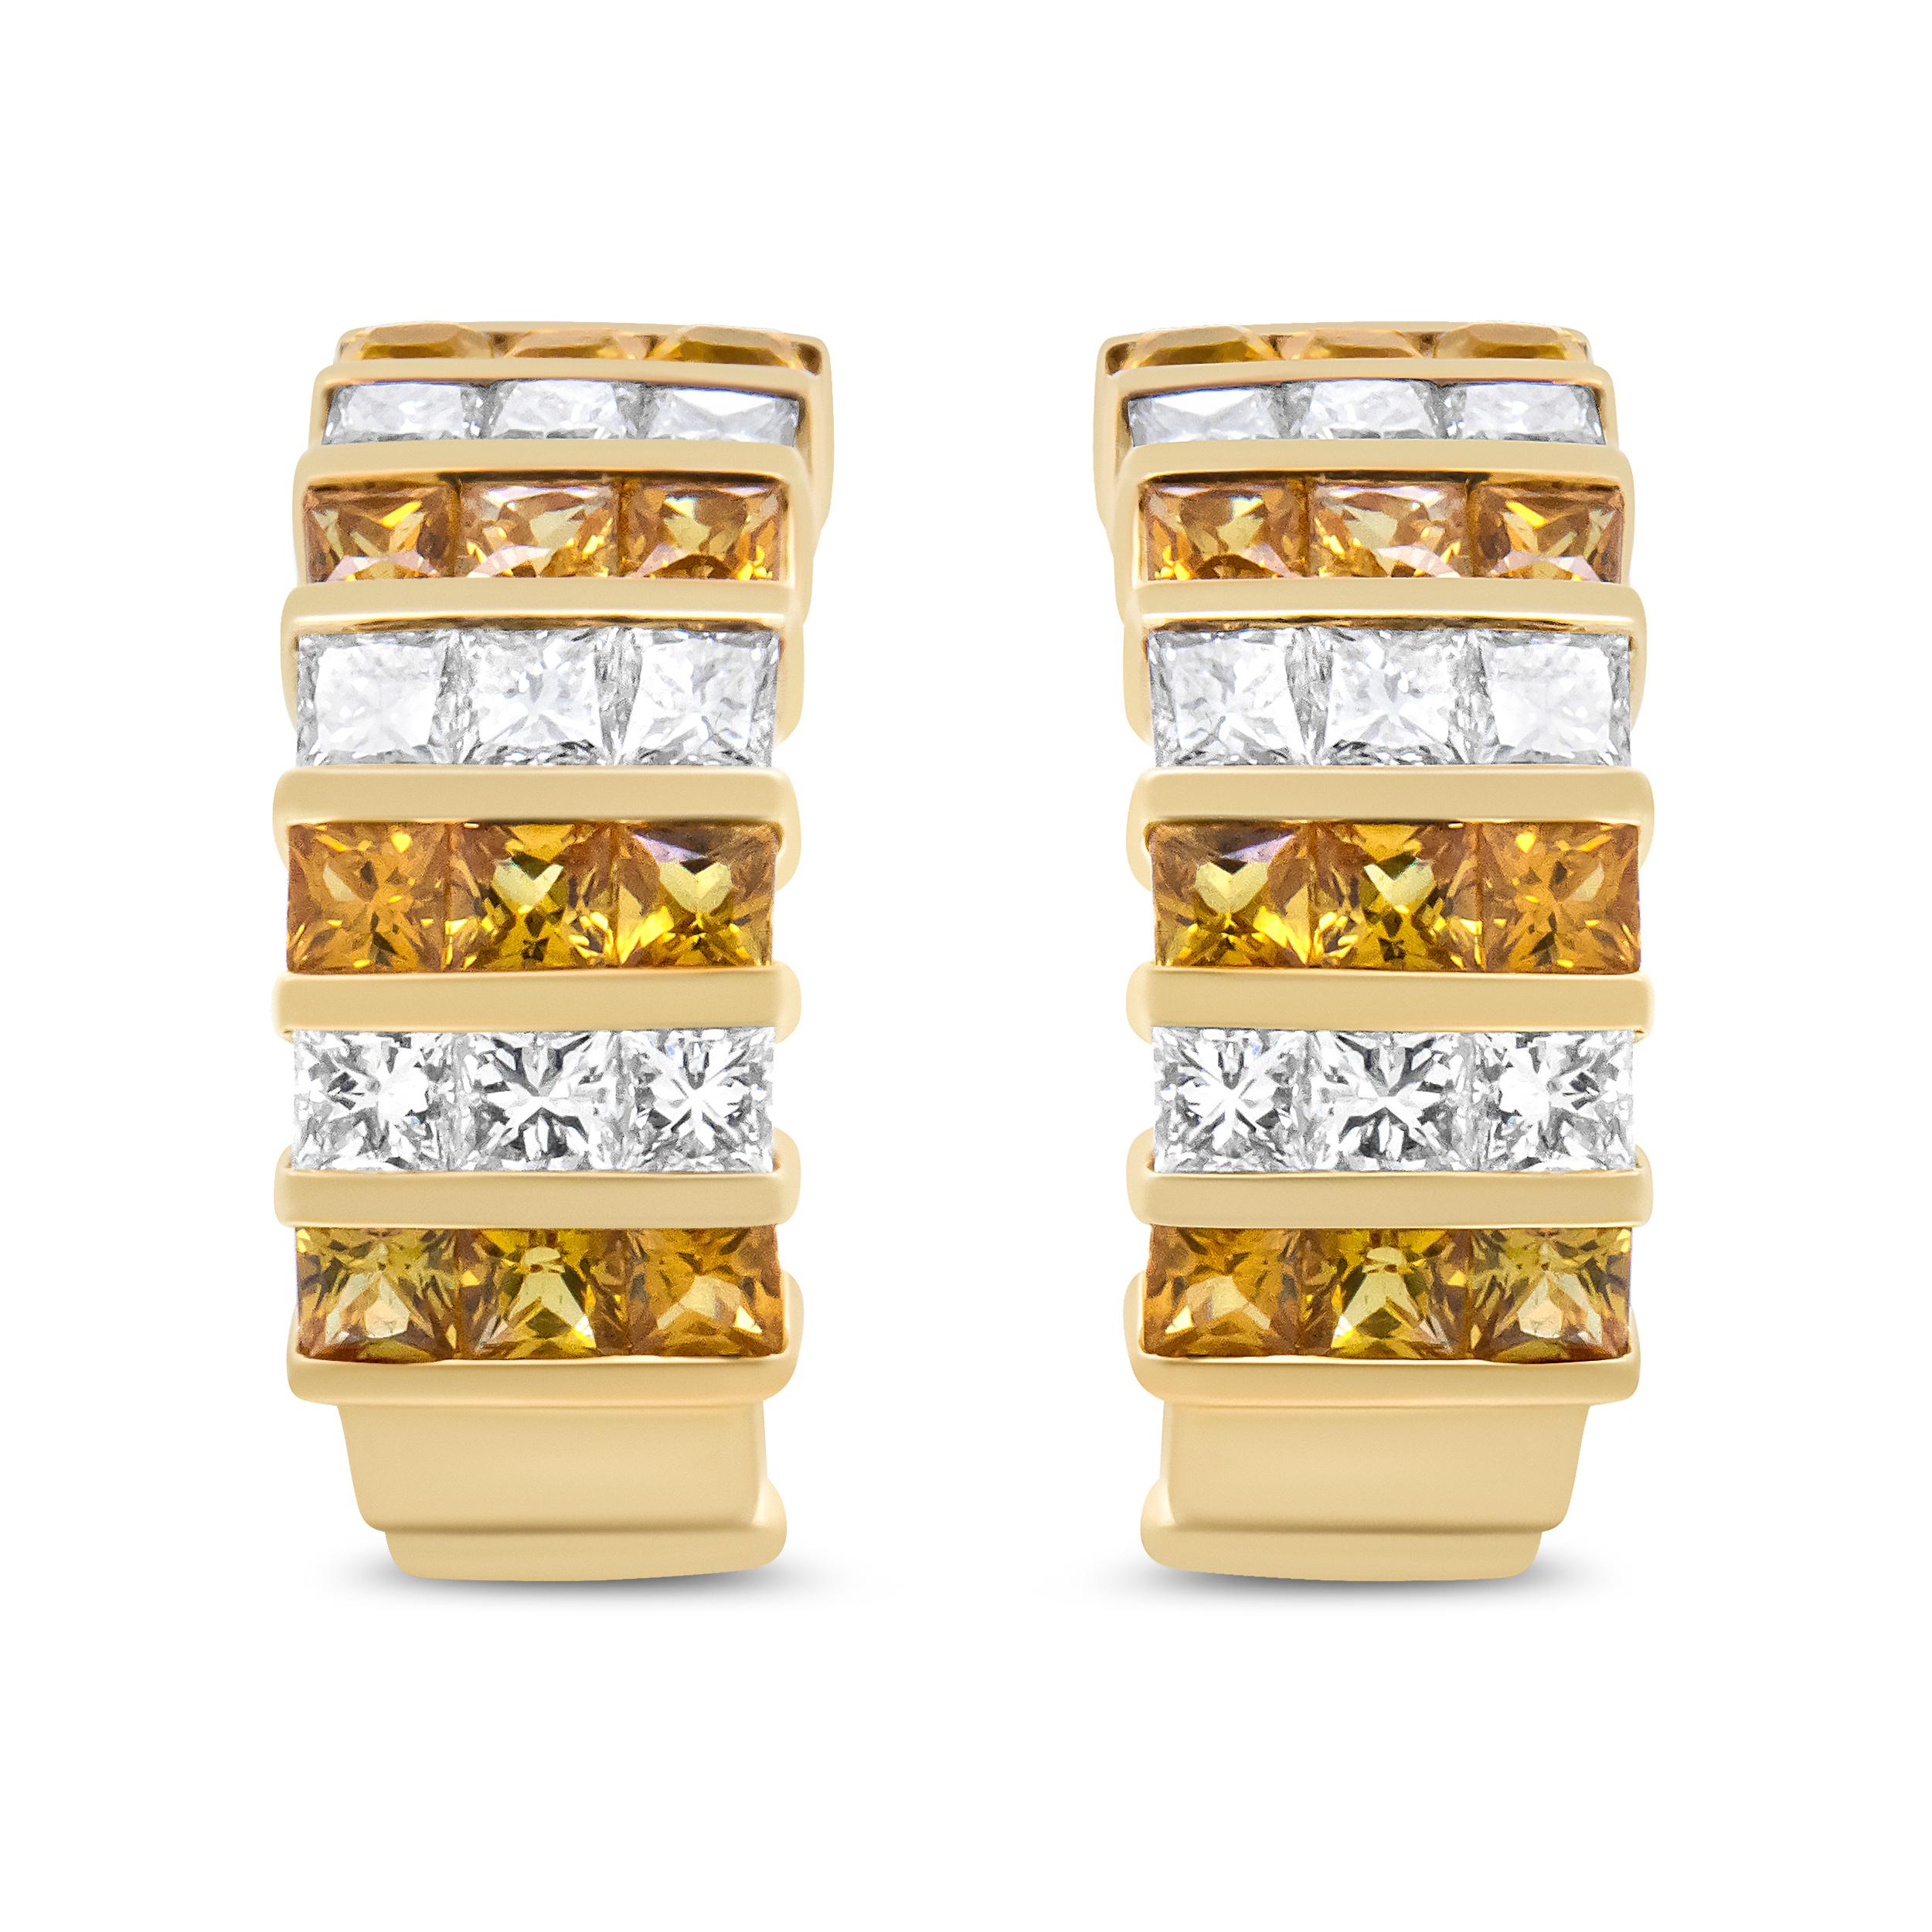 Das moderne Design dieser Ohrringe aus 18-karätigem Gelbgold vervollständigt Ihre Outfits in einem unverwechselbaren Stil. Reihen von sich abwechselnden Diamanten und Edelsteinen erhellen die Ästhetik und bringen Farbe in Ihr Leben. Diamanten im